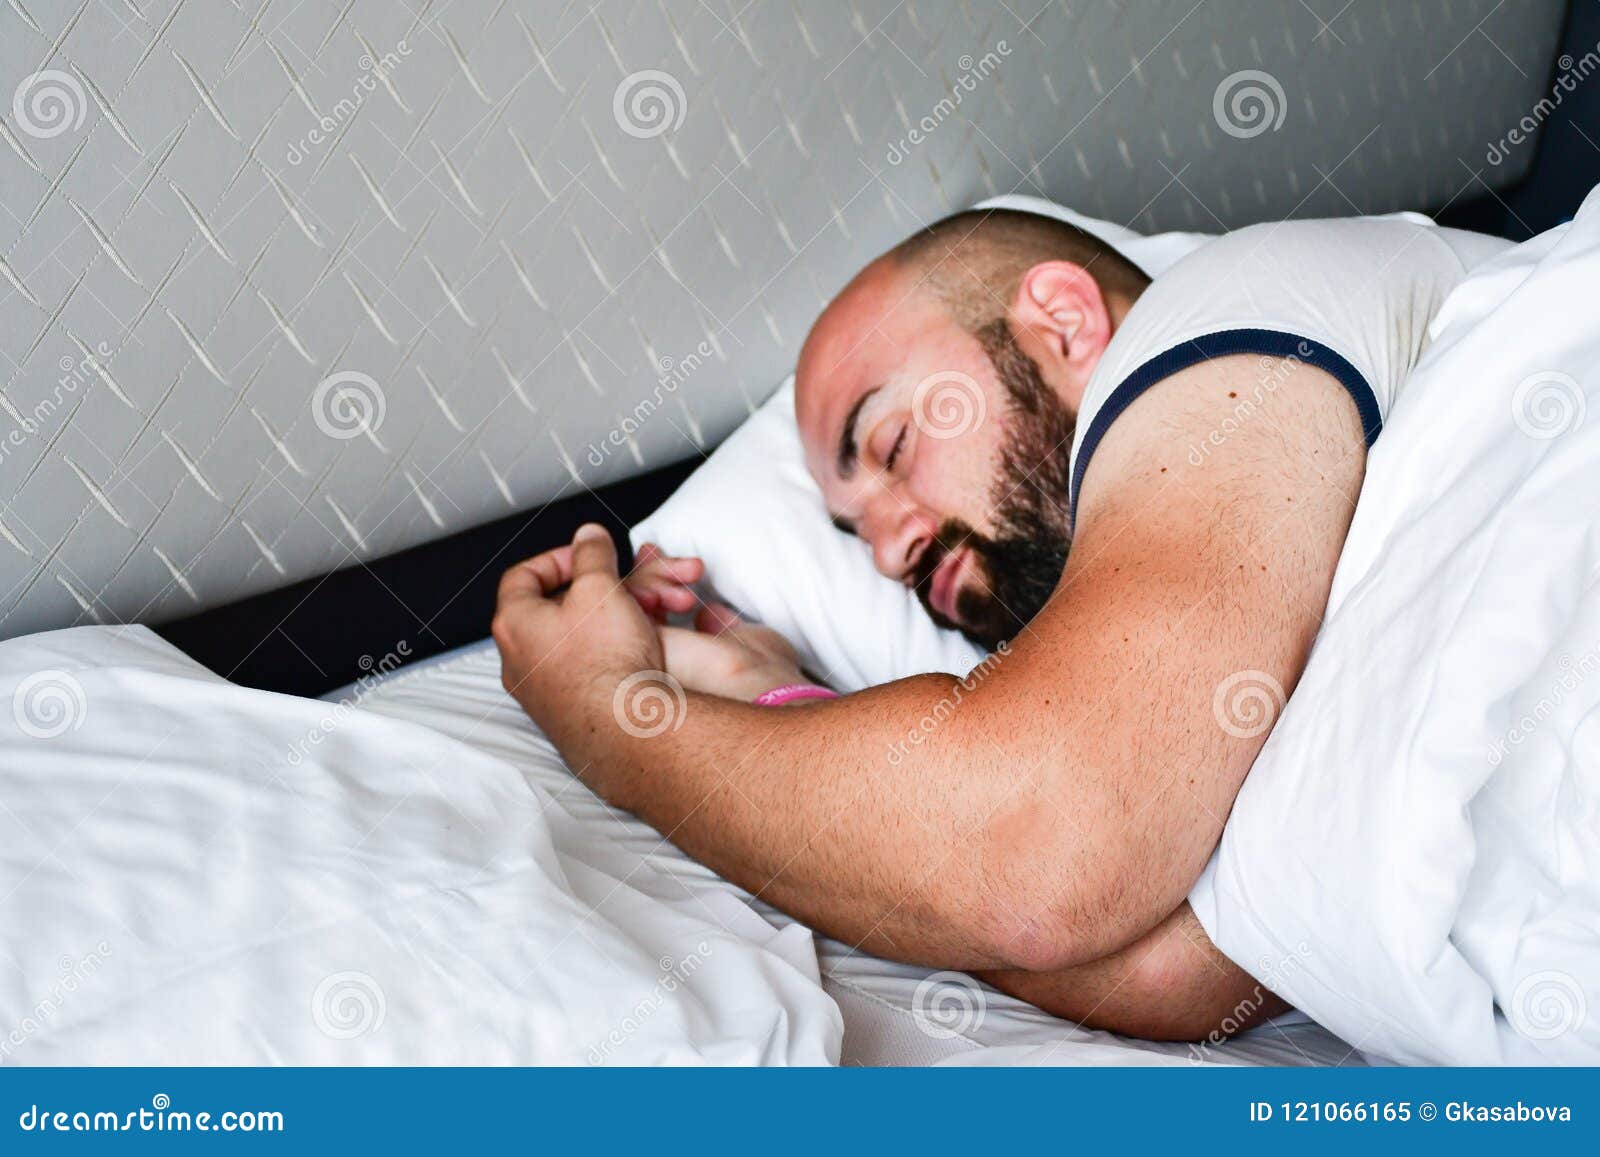 De mens van de slaap. Mooie gelooide gebaarde spiermensenslaap in bed